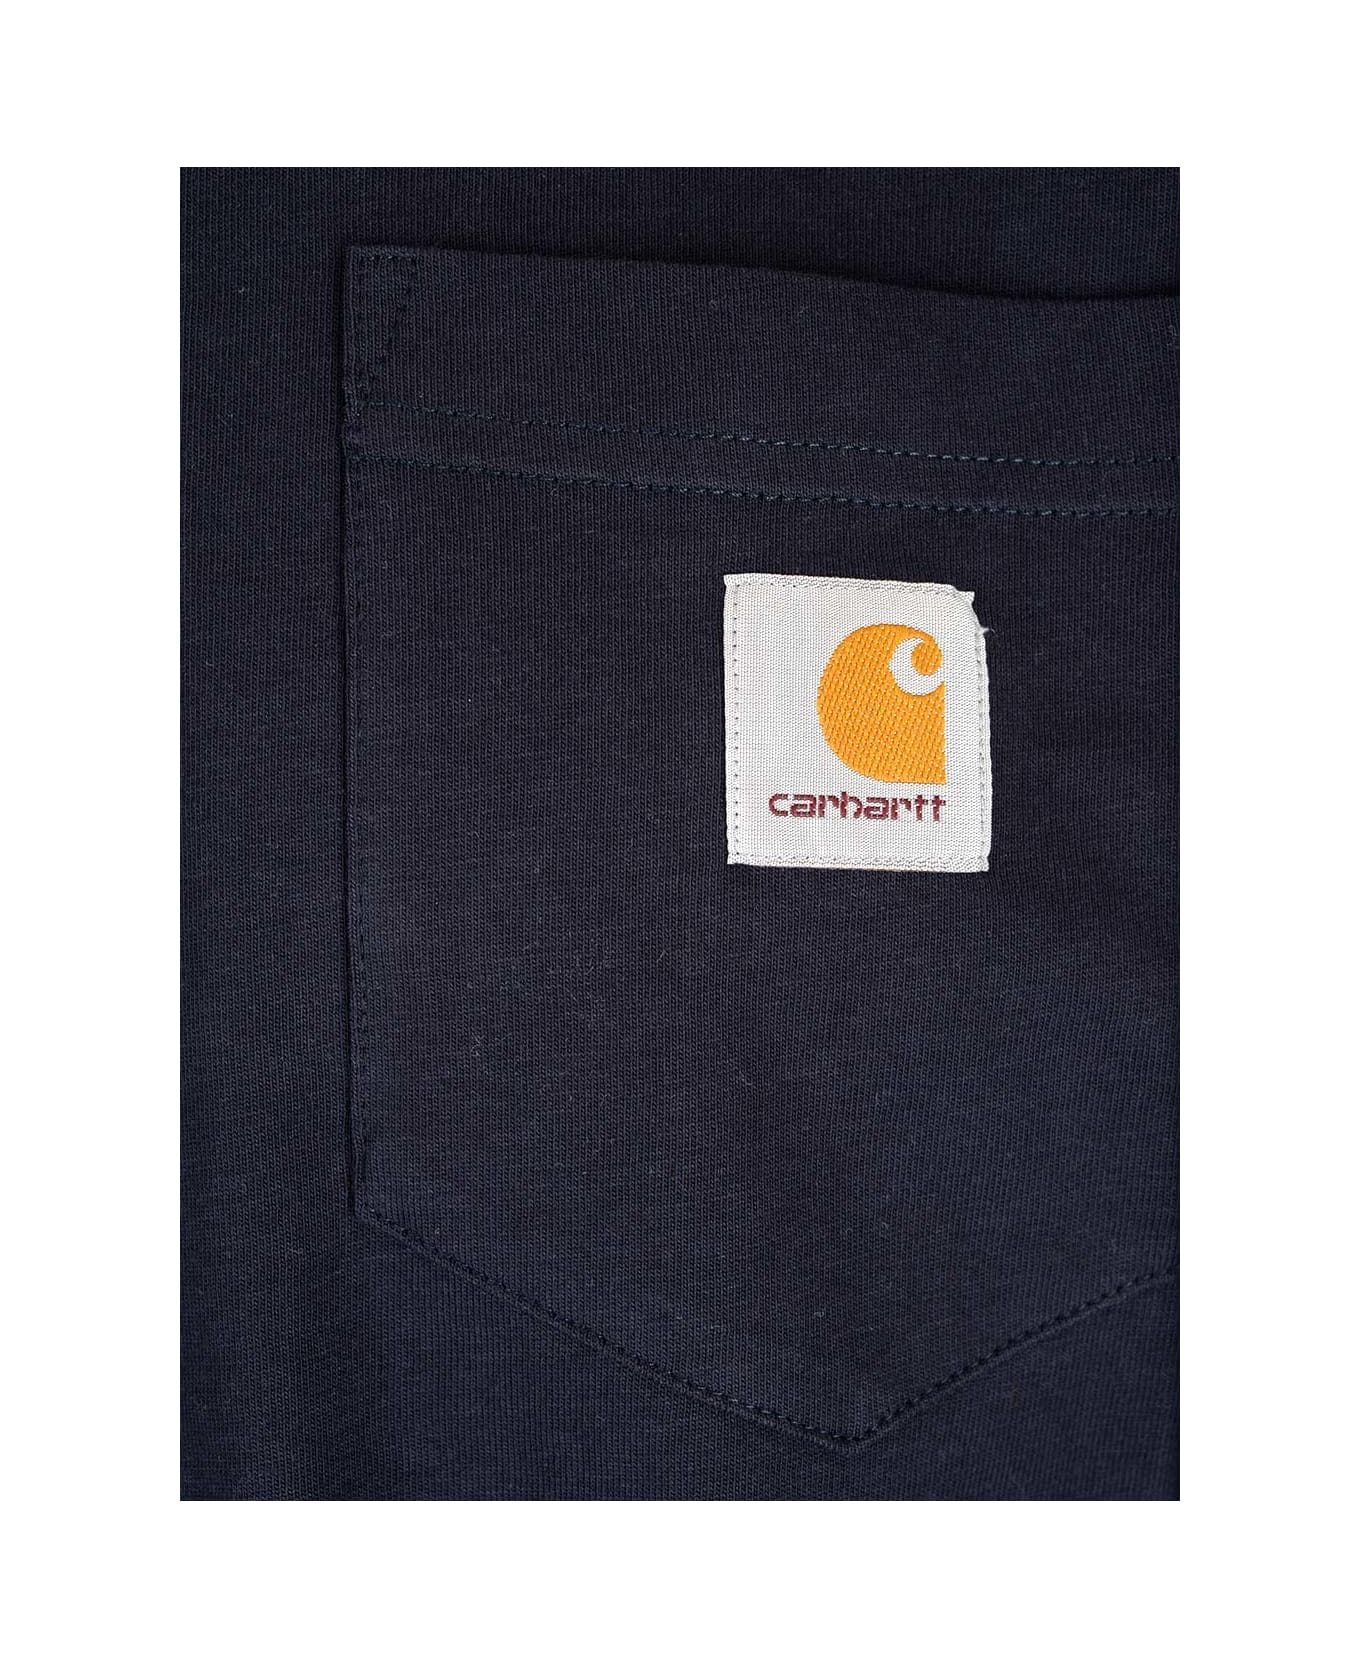 Carhartt Chest Pocket T-shirt - Dark navy